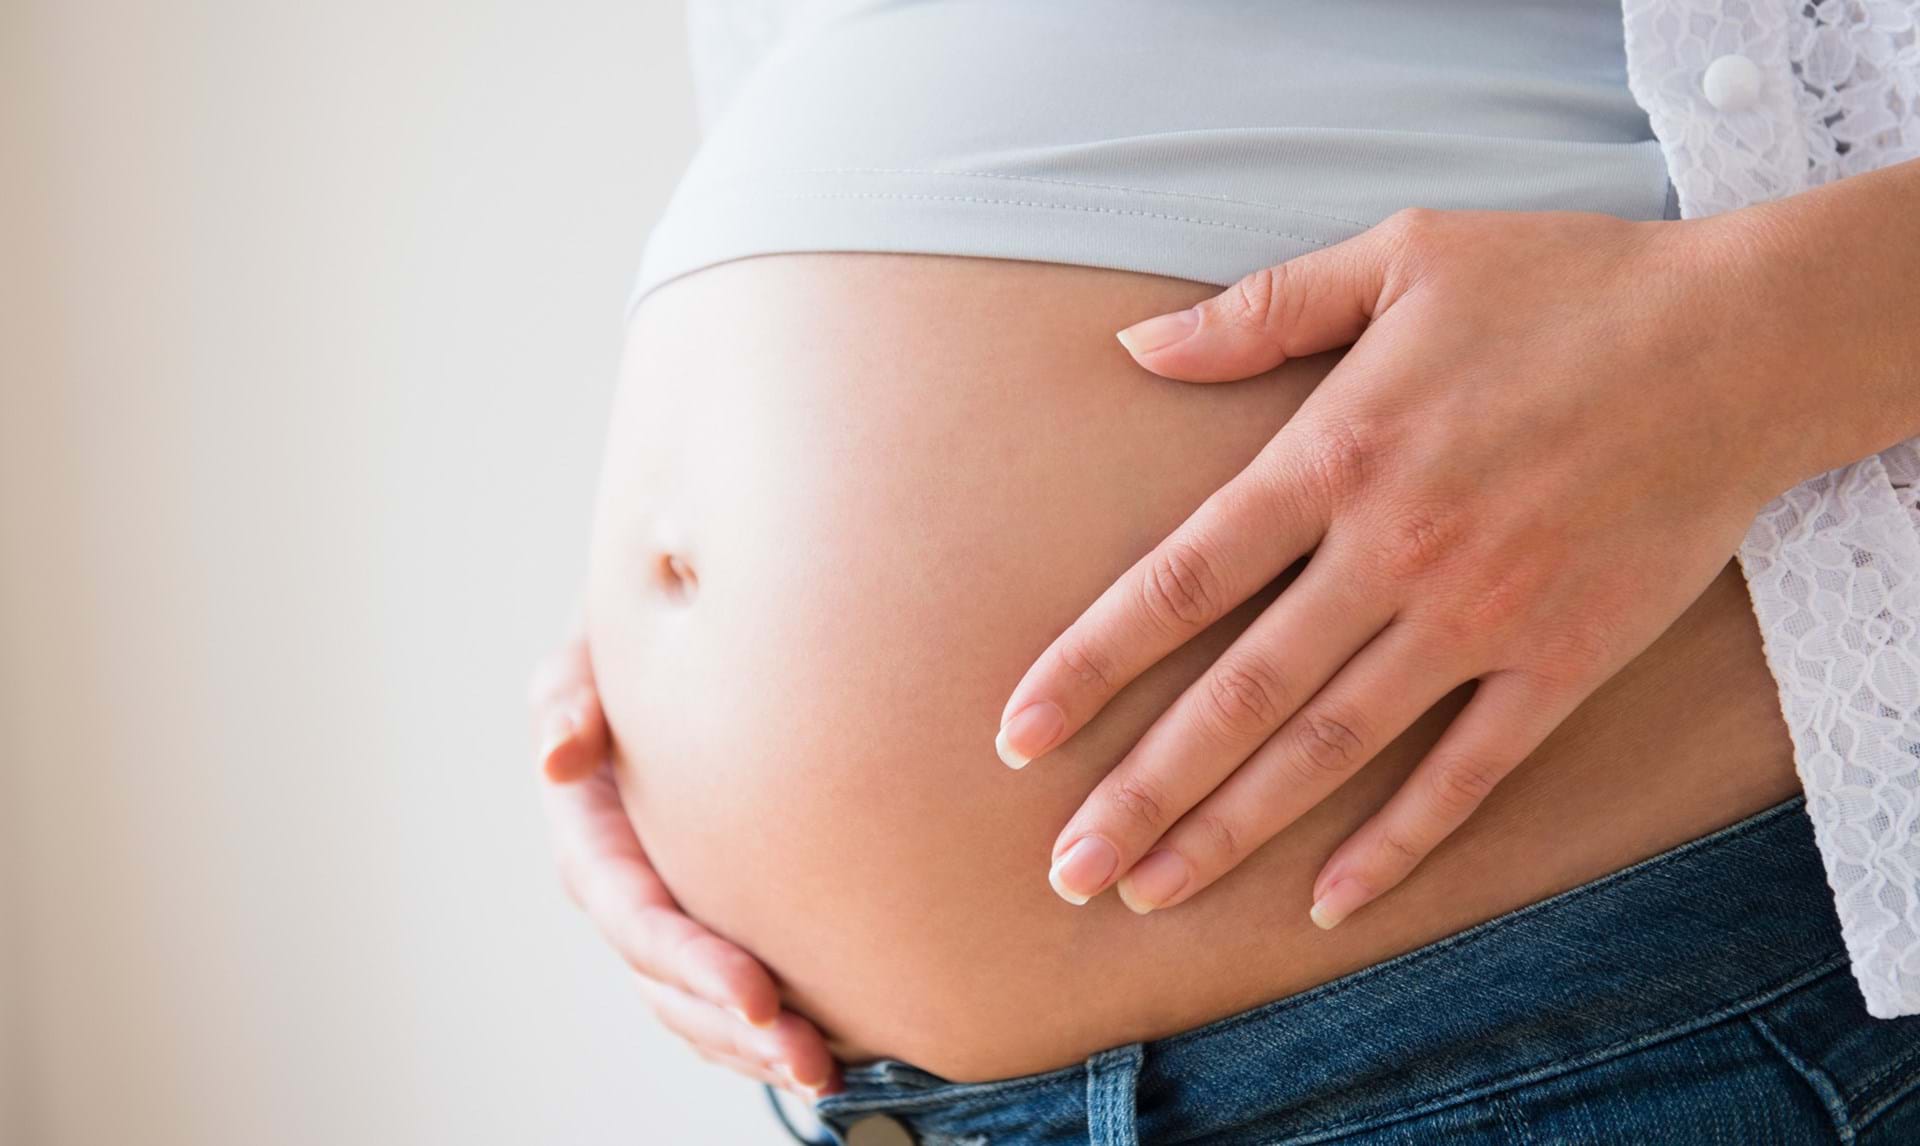 Pletblødning i starten af graviditet